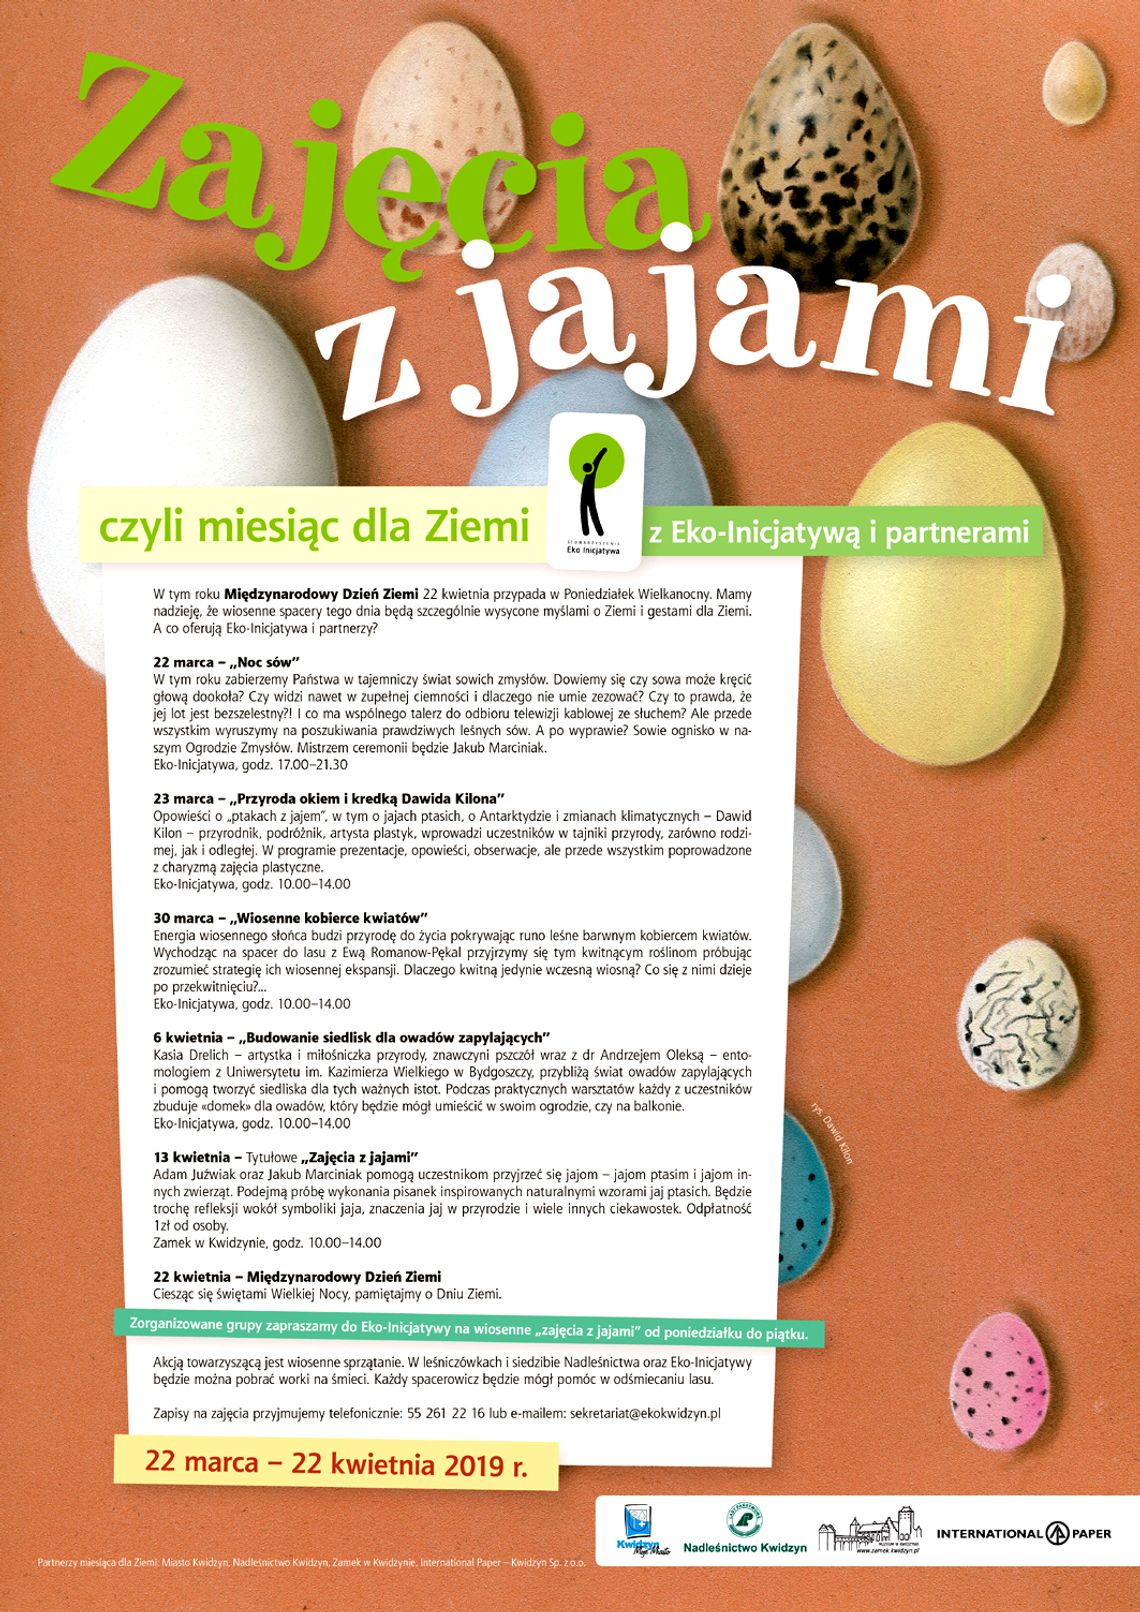 “Zajęcia z jajami” czy miesiąc dla Ziemi z Eko-Inicjatywą i partnerami